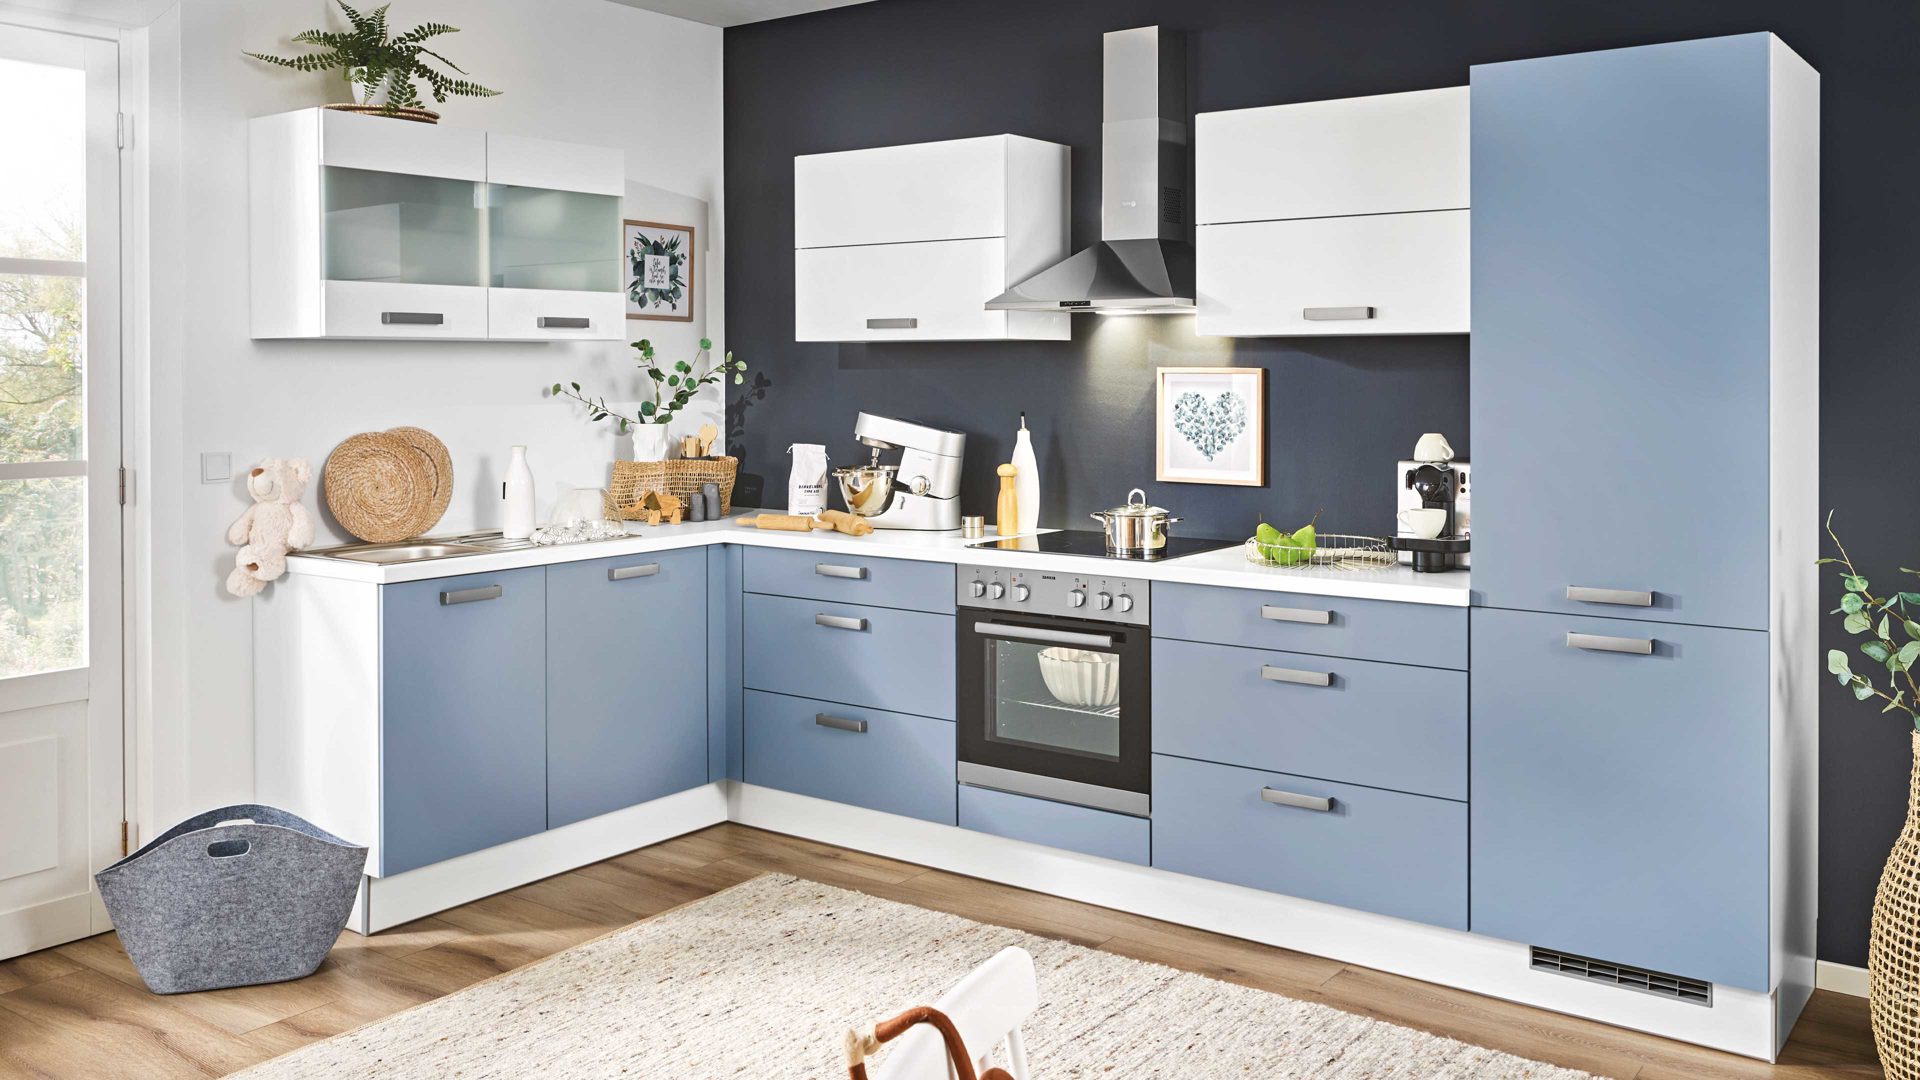 Einbauküche Pino küchen aus Holz in Hellblau pino Einbauküche inklusive Einbaugeräte Pastellblau & Weiß - Stellfläche ca. 175 x 347 cm